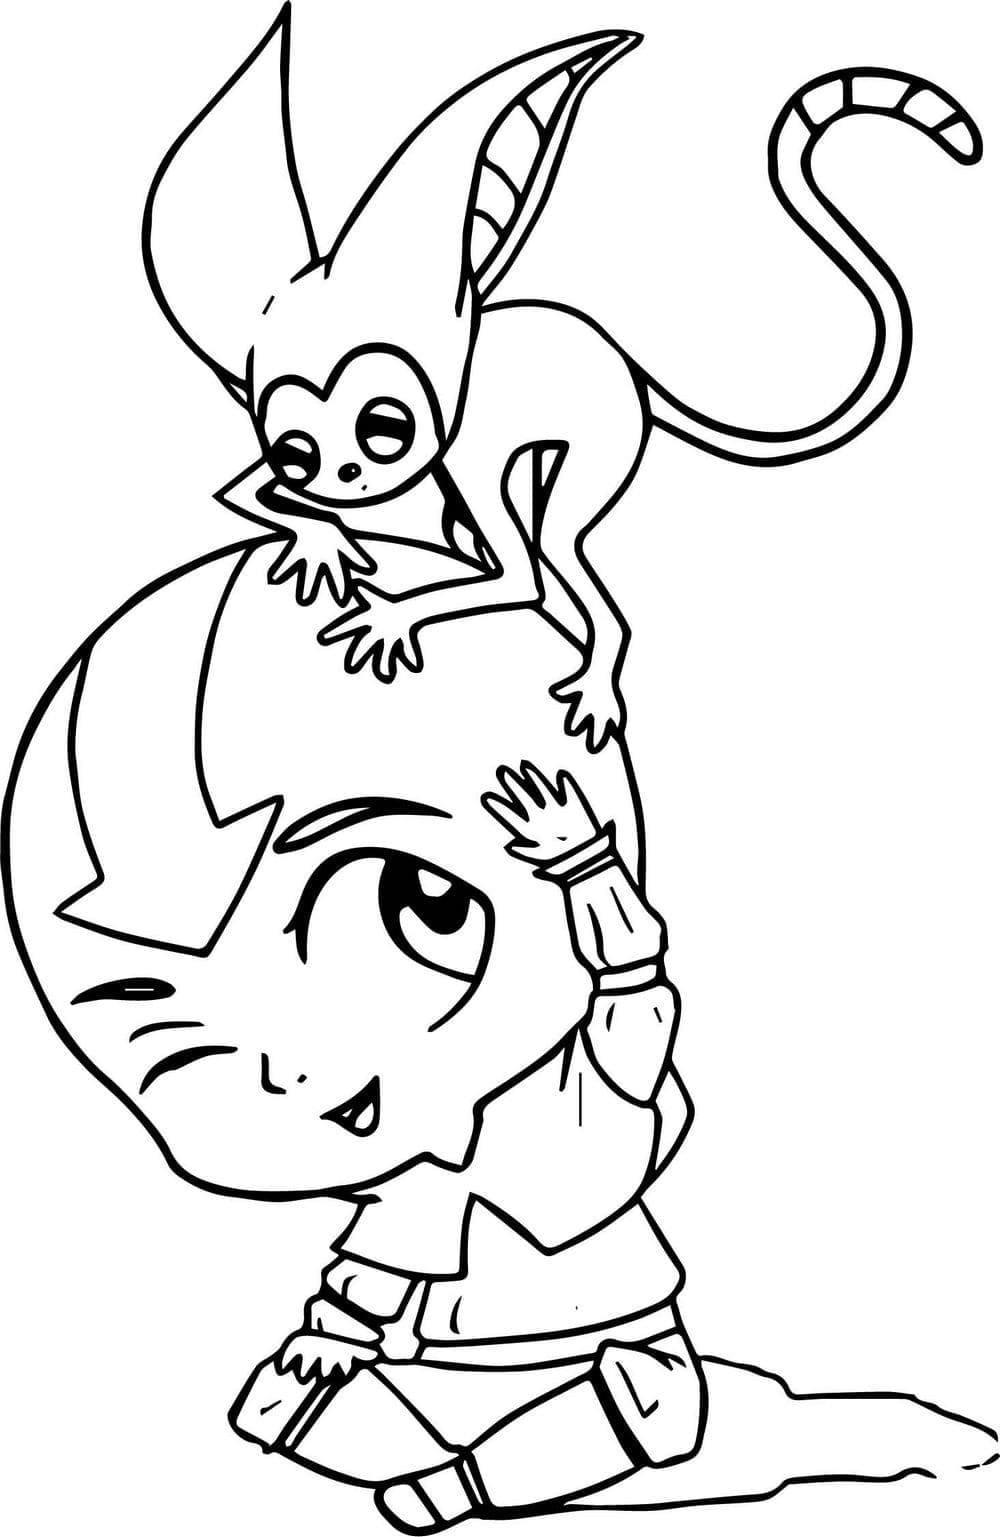 Chibi Aang et Momo coloring page